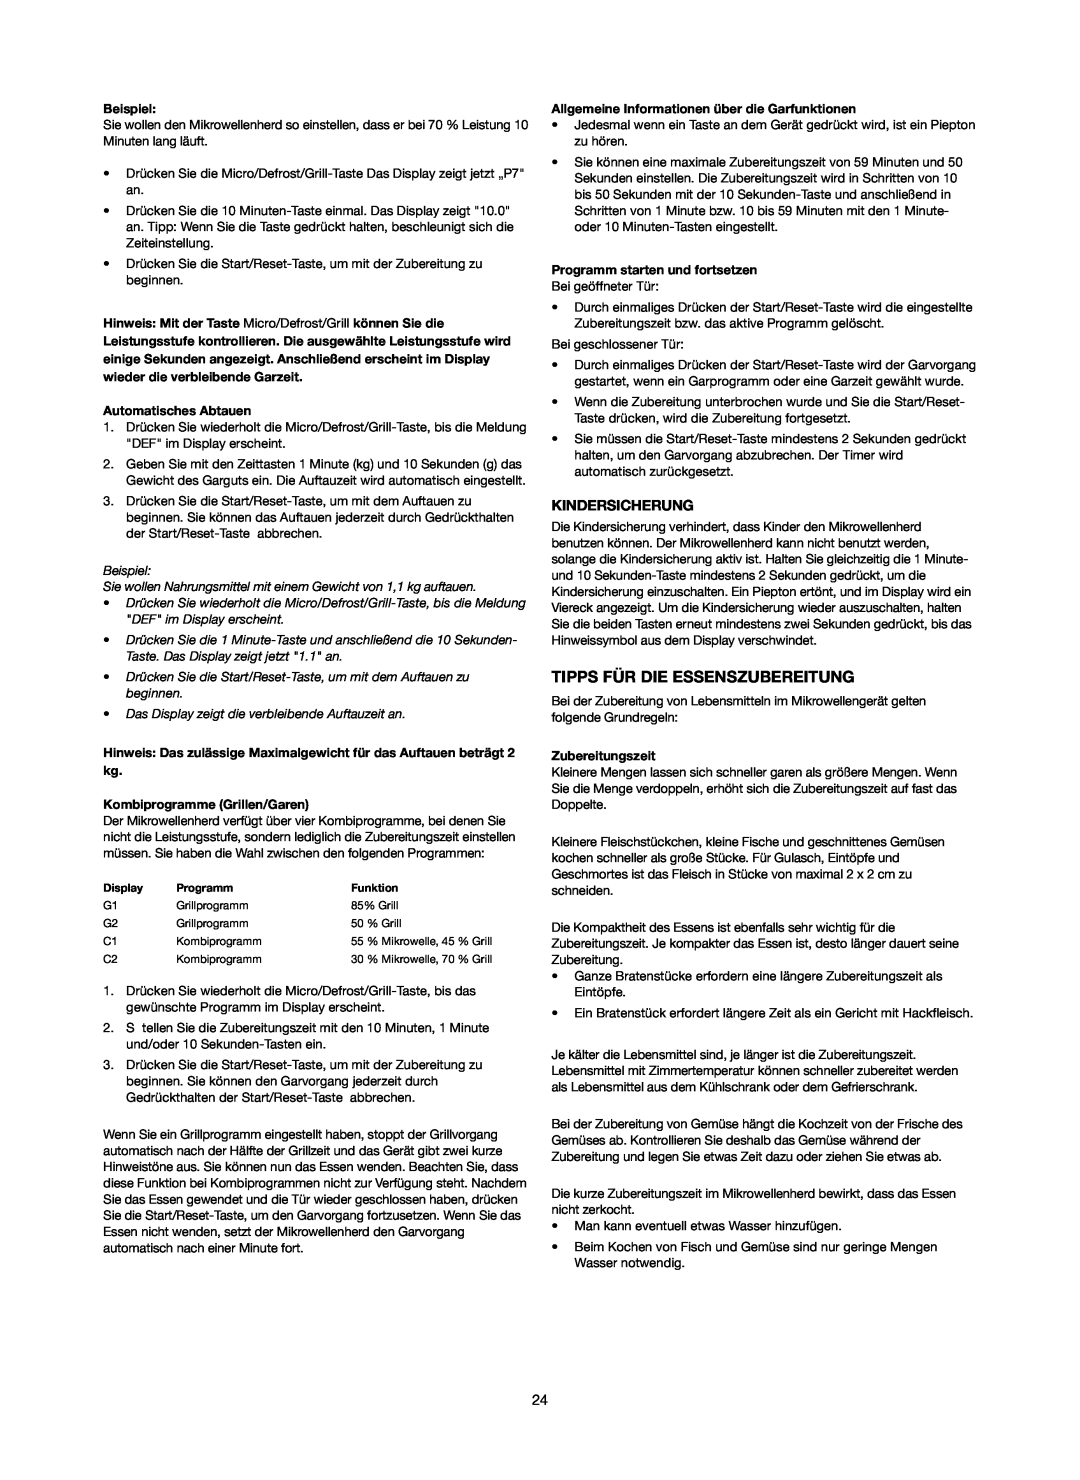 Melissa 253-006 manual Tipps Für Die Essenszubereitung, Kindersicherung, Beispiel, Automatisches Abtauen, Zubereitungszeit 